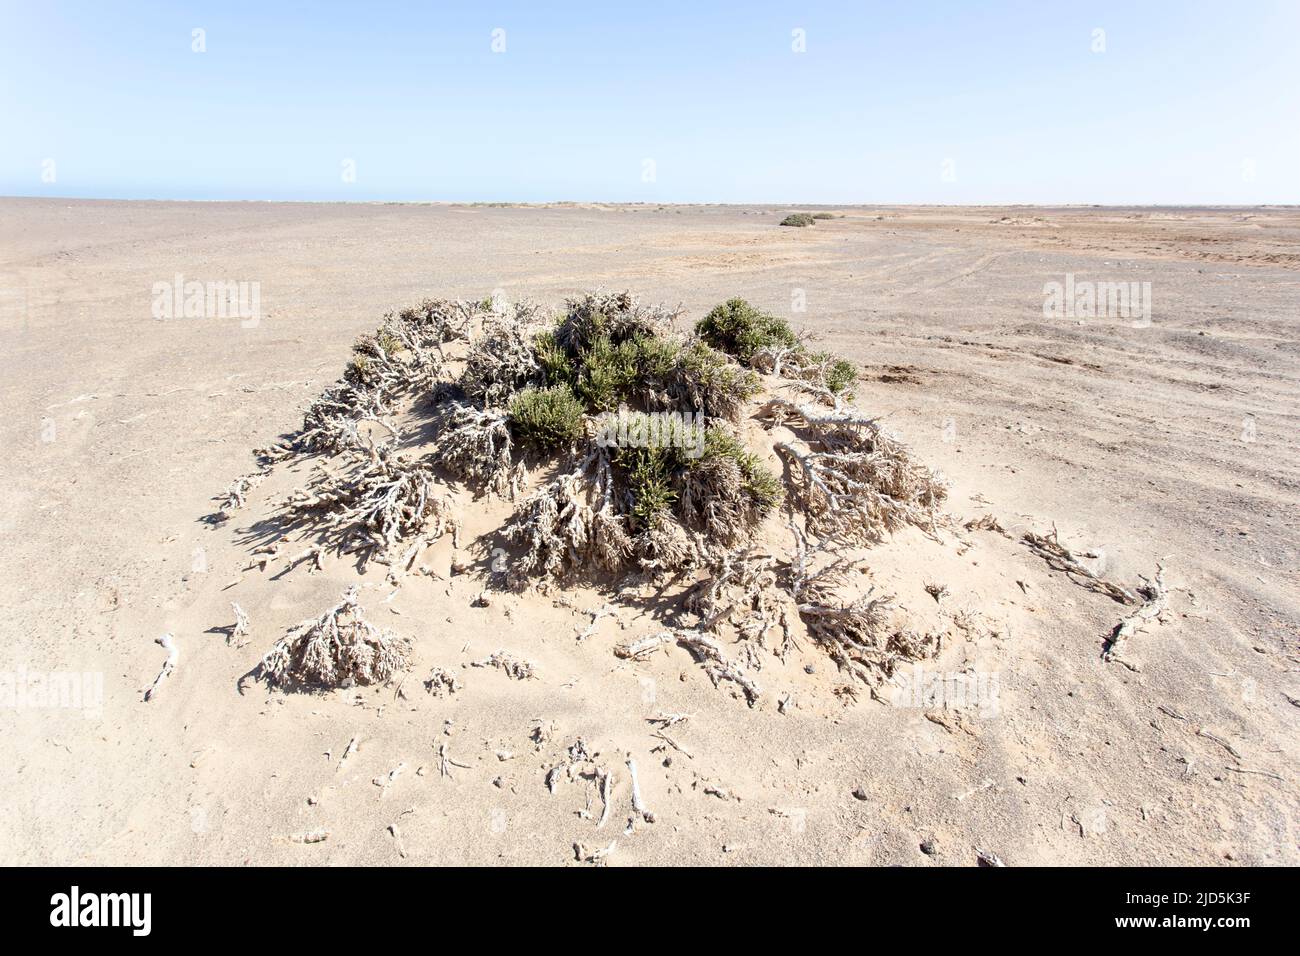 View of Helichrysum intermedium in Namibia desert Stock Photo